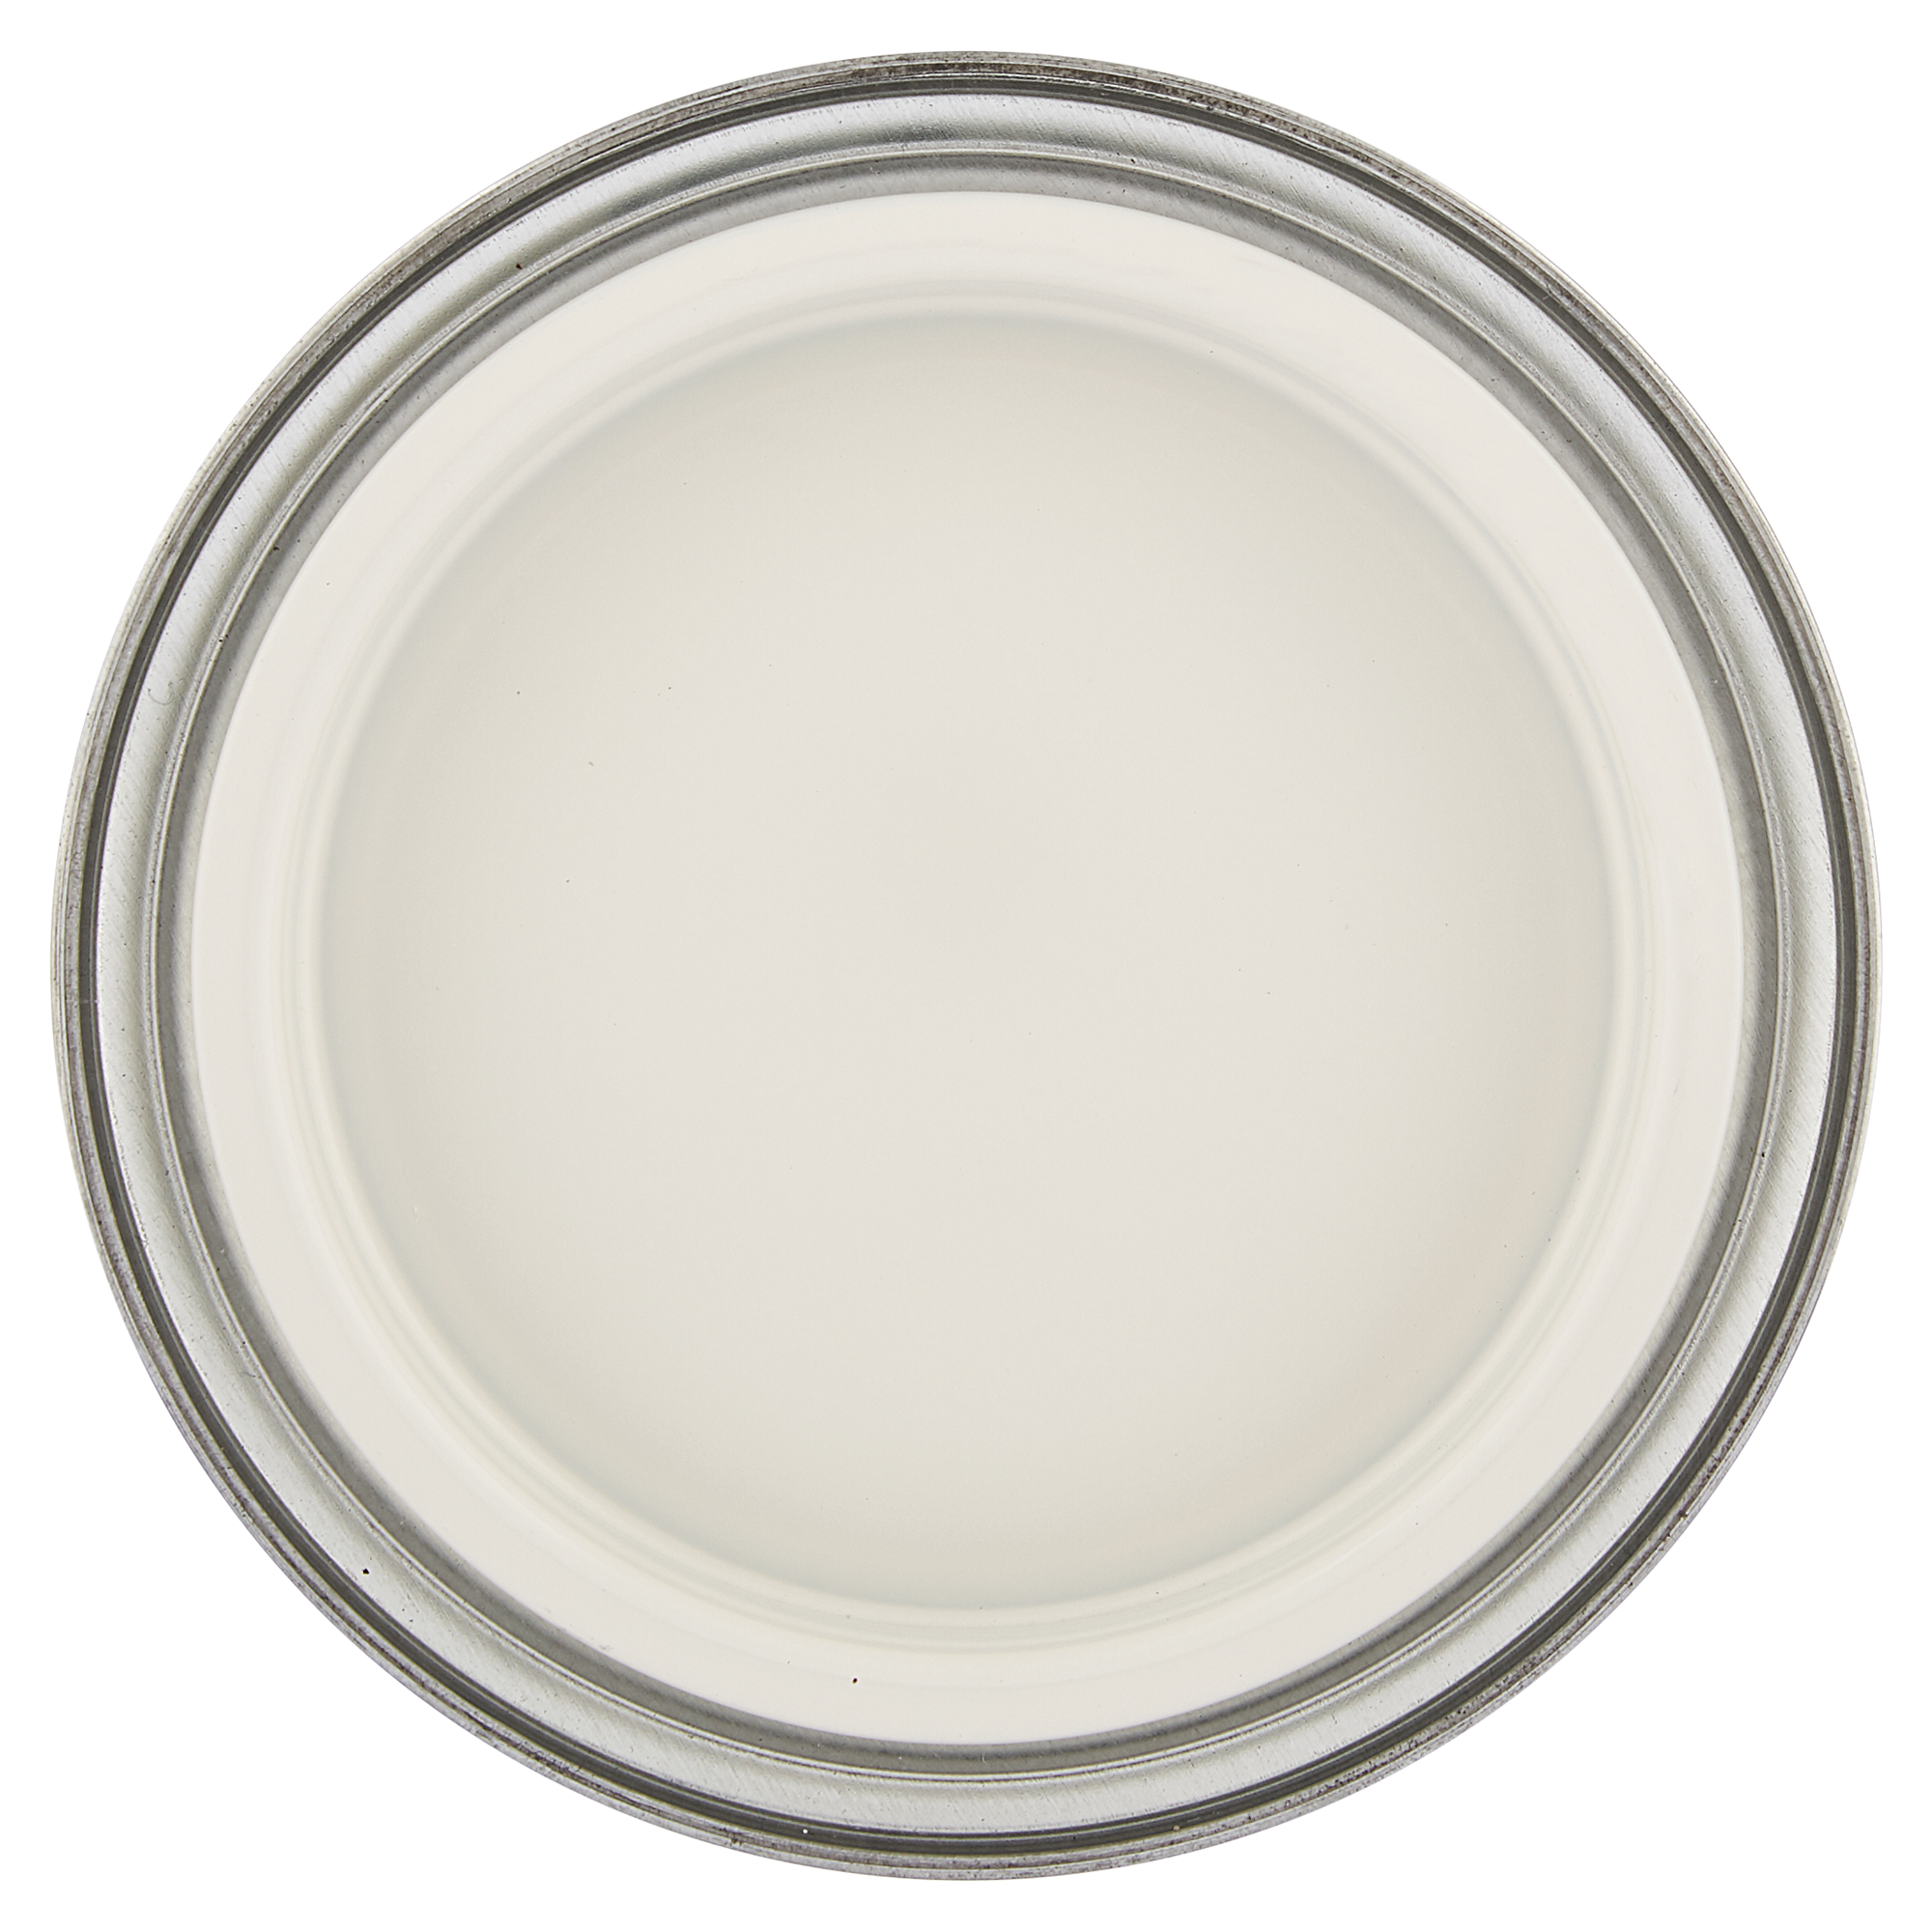 Möbel-Weißlack cremeweiß seidenmatt 500 ml + product picture